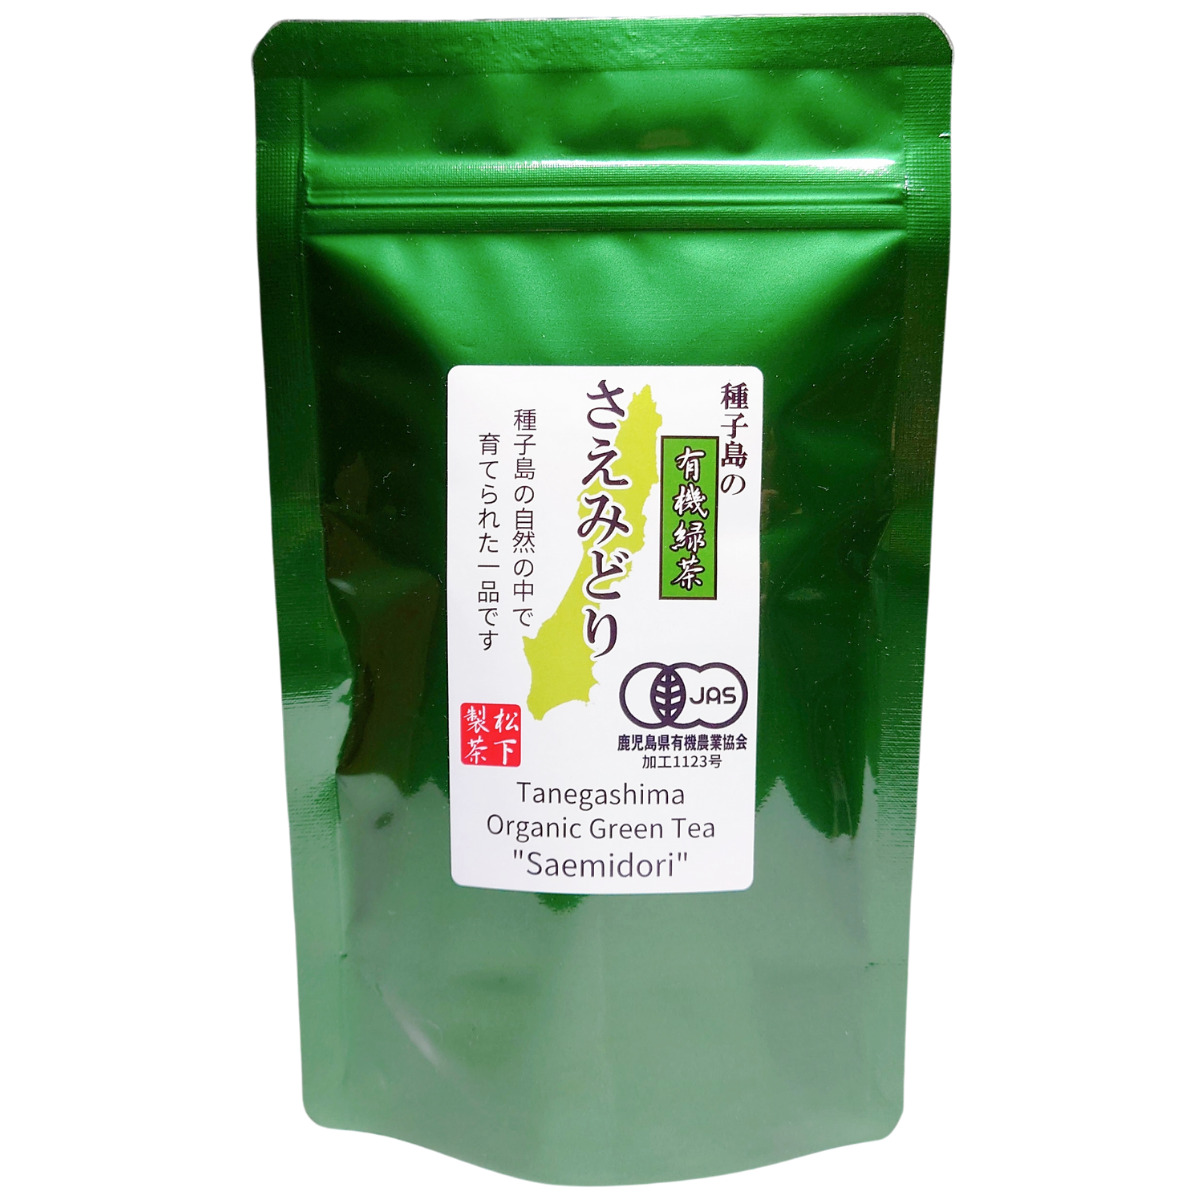 種子島の有機緑茶『さえみどり』 茶葉(リーフ) 100g 松下製茶